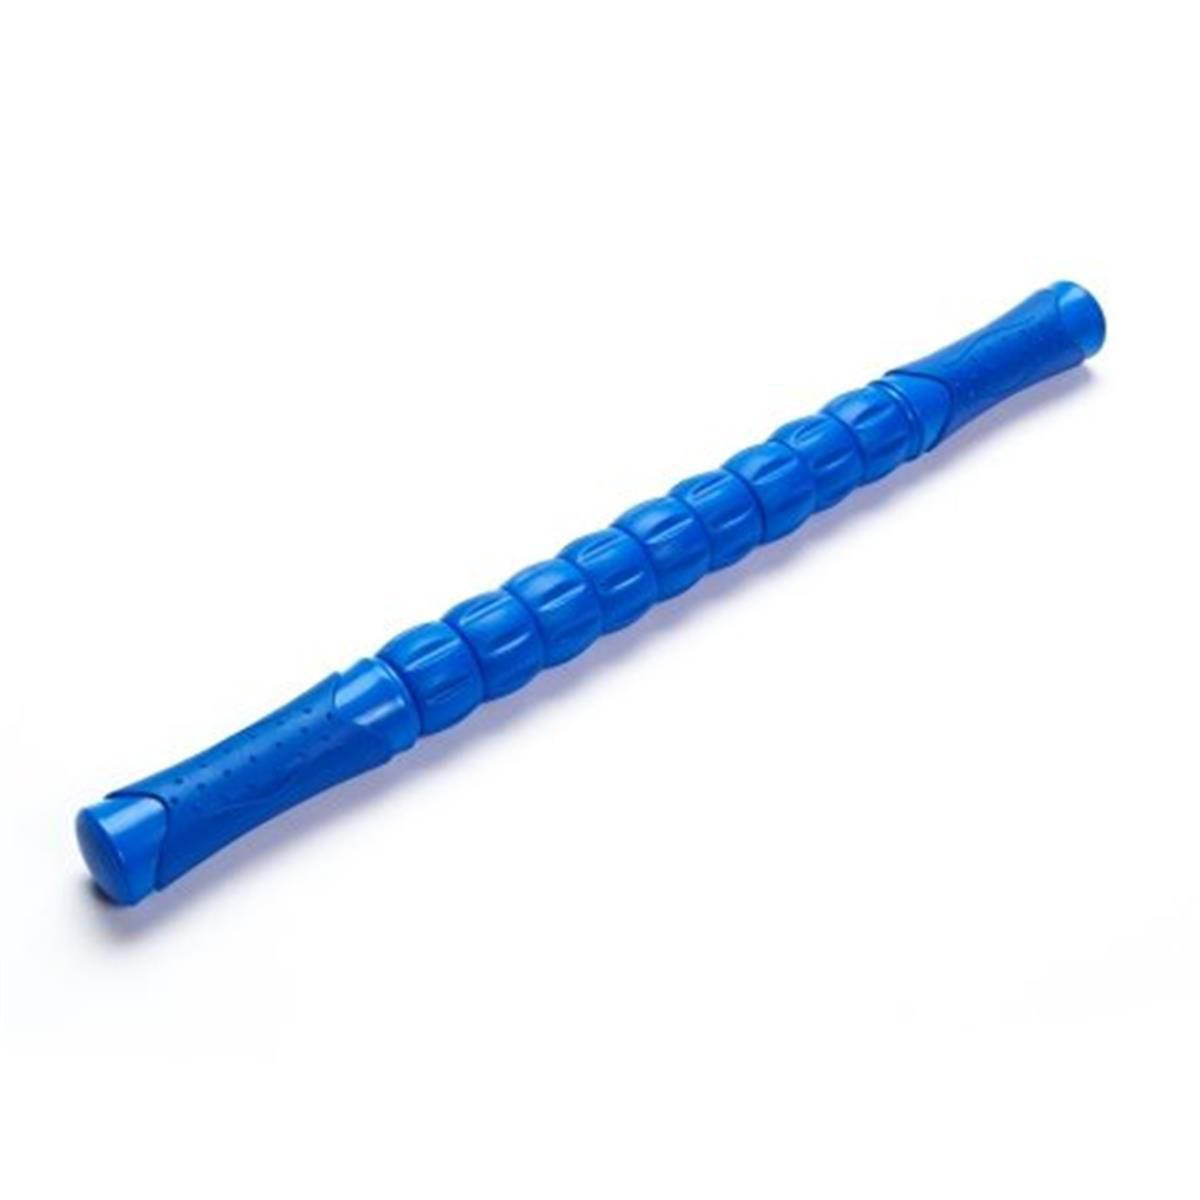 Image for HWR Deep Tissue Massage Stick Roller, Blue at Kohl's.